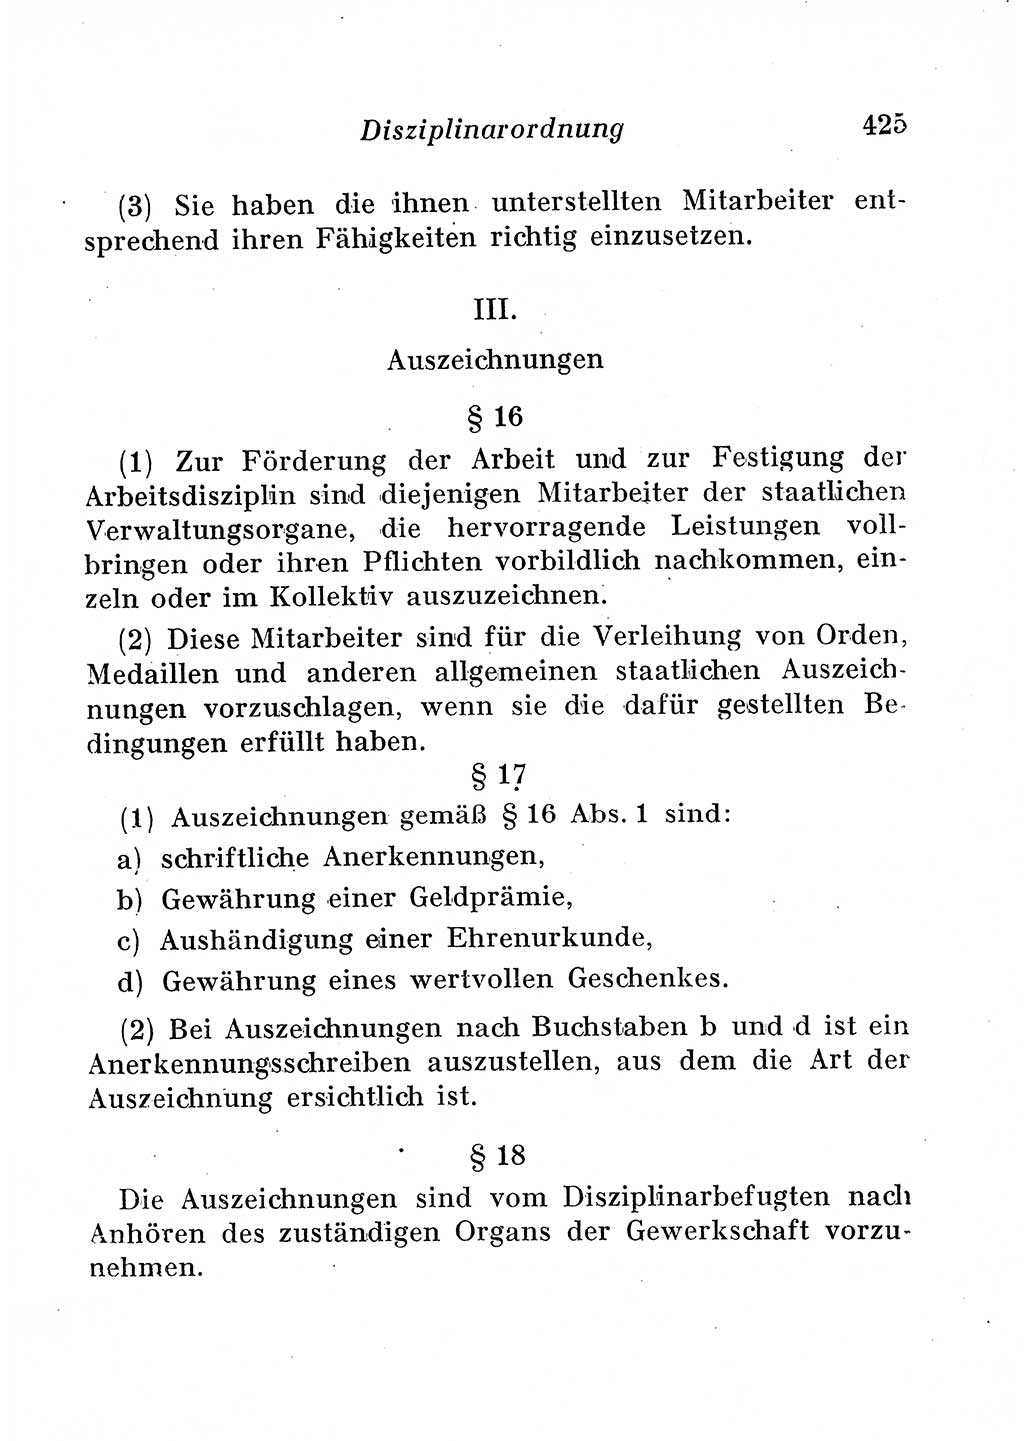 Staats- und verwaltungsrechtliche Gesetze der Deutschen Demokratischen Republik (DDR) 1958, Seite 425 (StVerwR Ges. DDR 1958, S. 425)